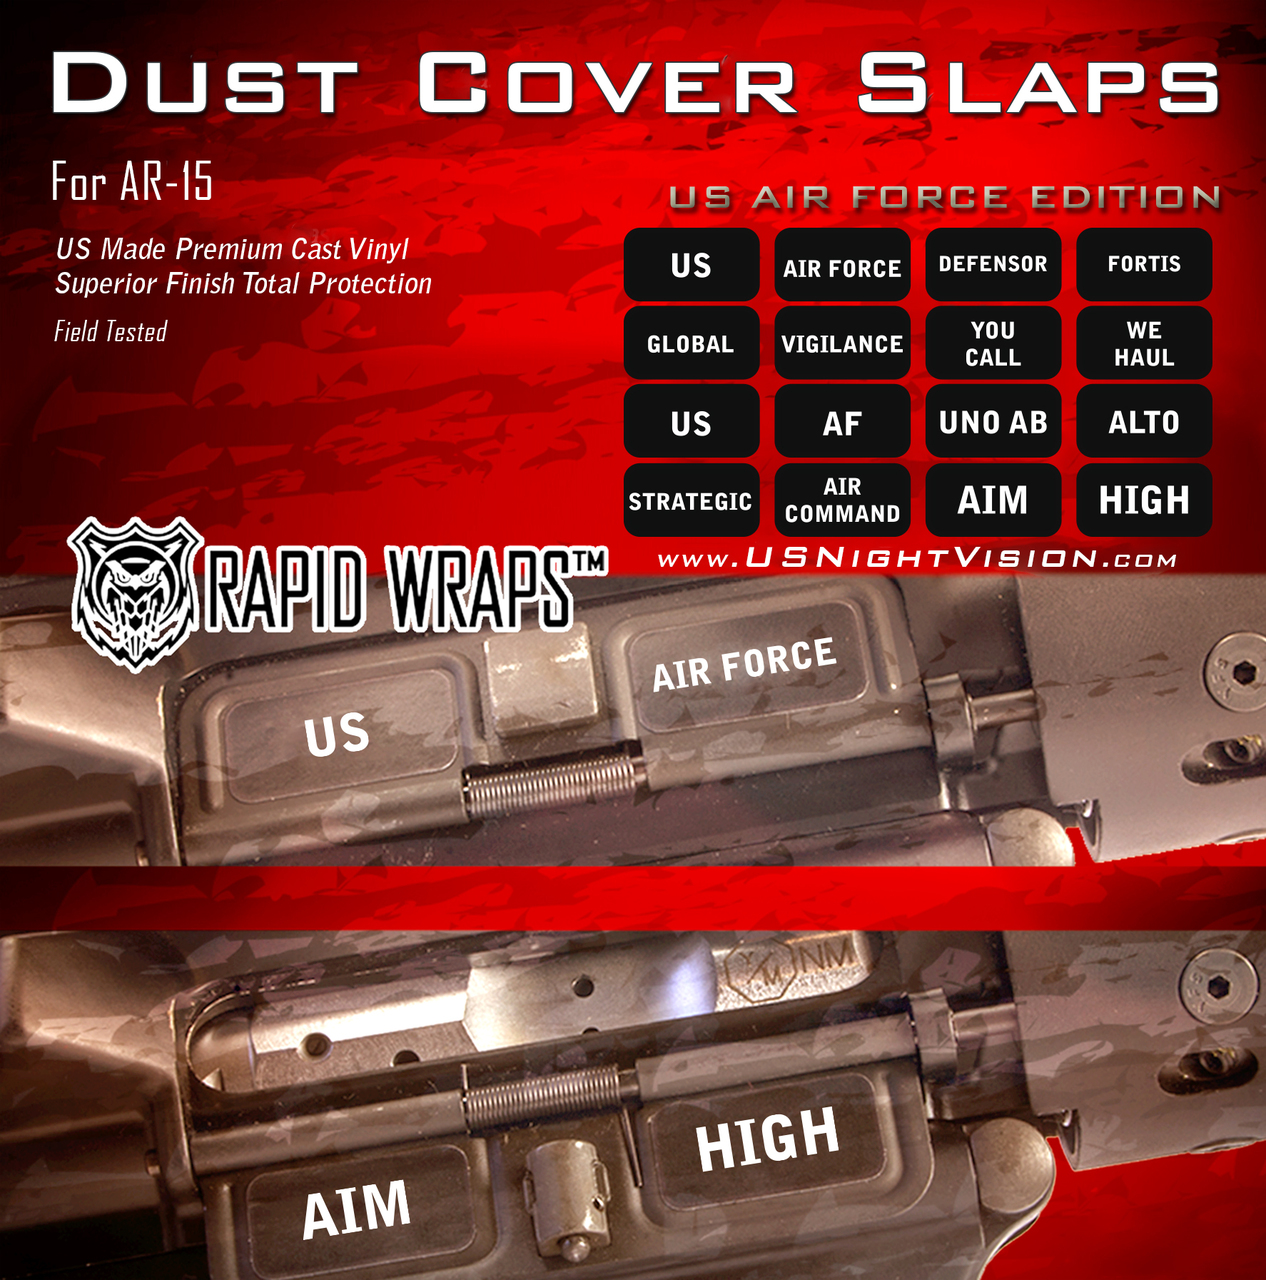 Dust-Cover-Slaps-vinyl-gun-skin-wrap-AR-15-magazine